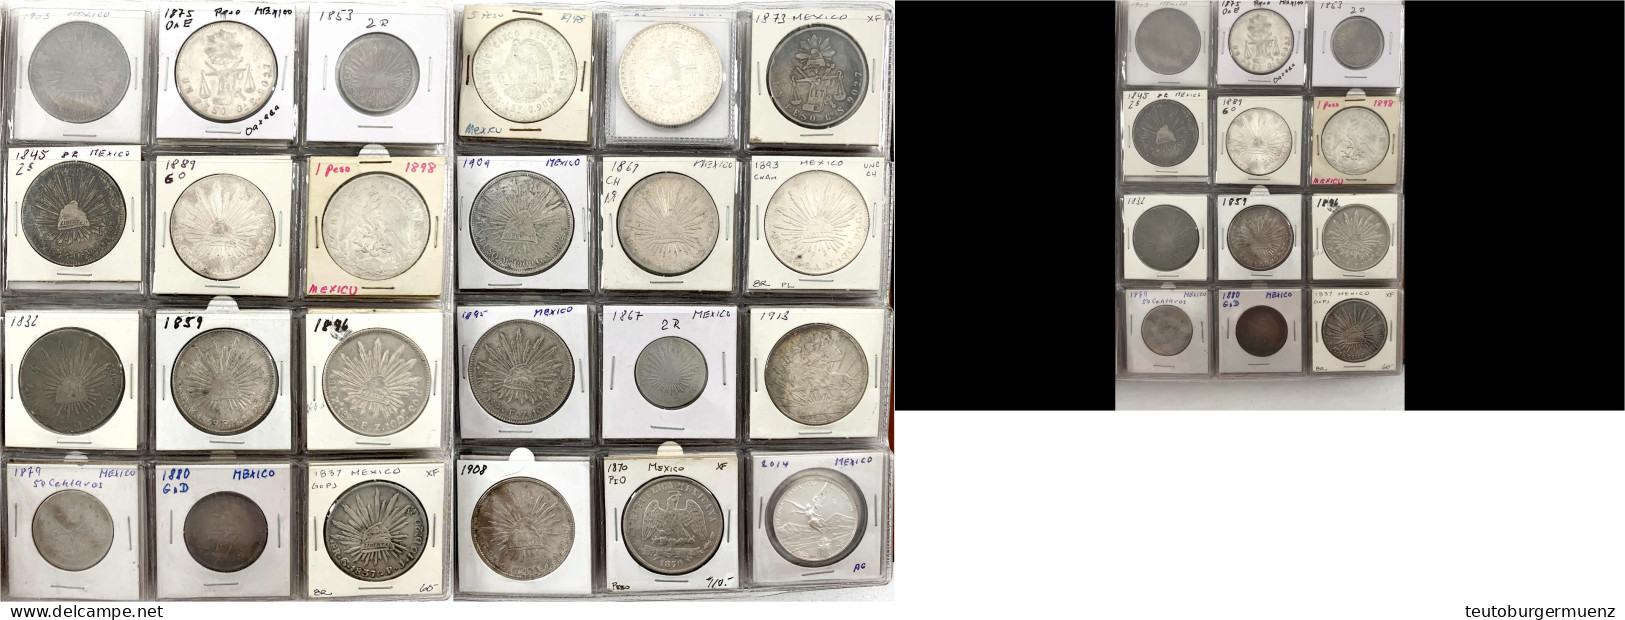 Tolle Sammlung Im Album. 103 Münzen Des 18. Bis 20. Jh. Viel Silber. 25 X Peso/8 Reales (u.a. Kaiser Maximilian), Eine B - México